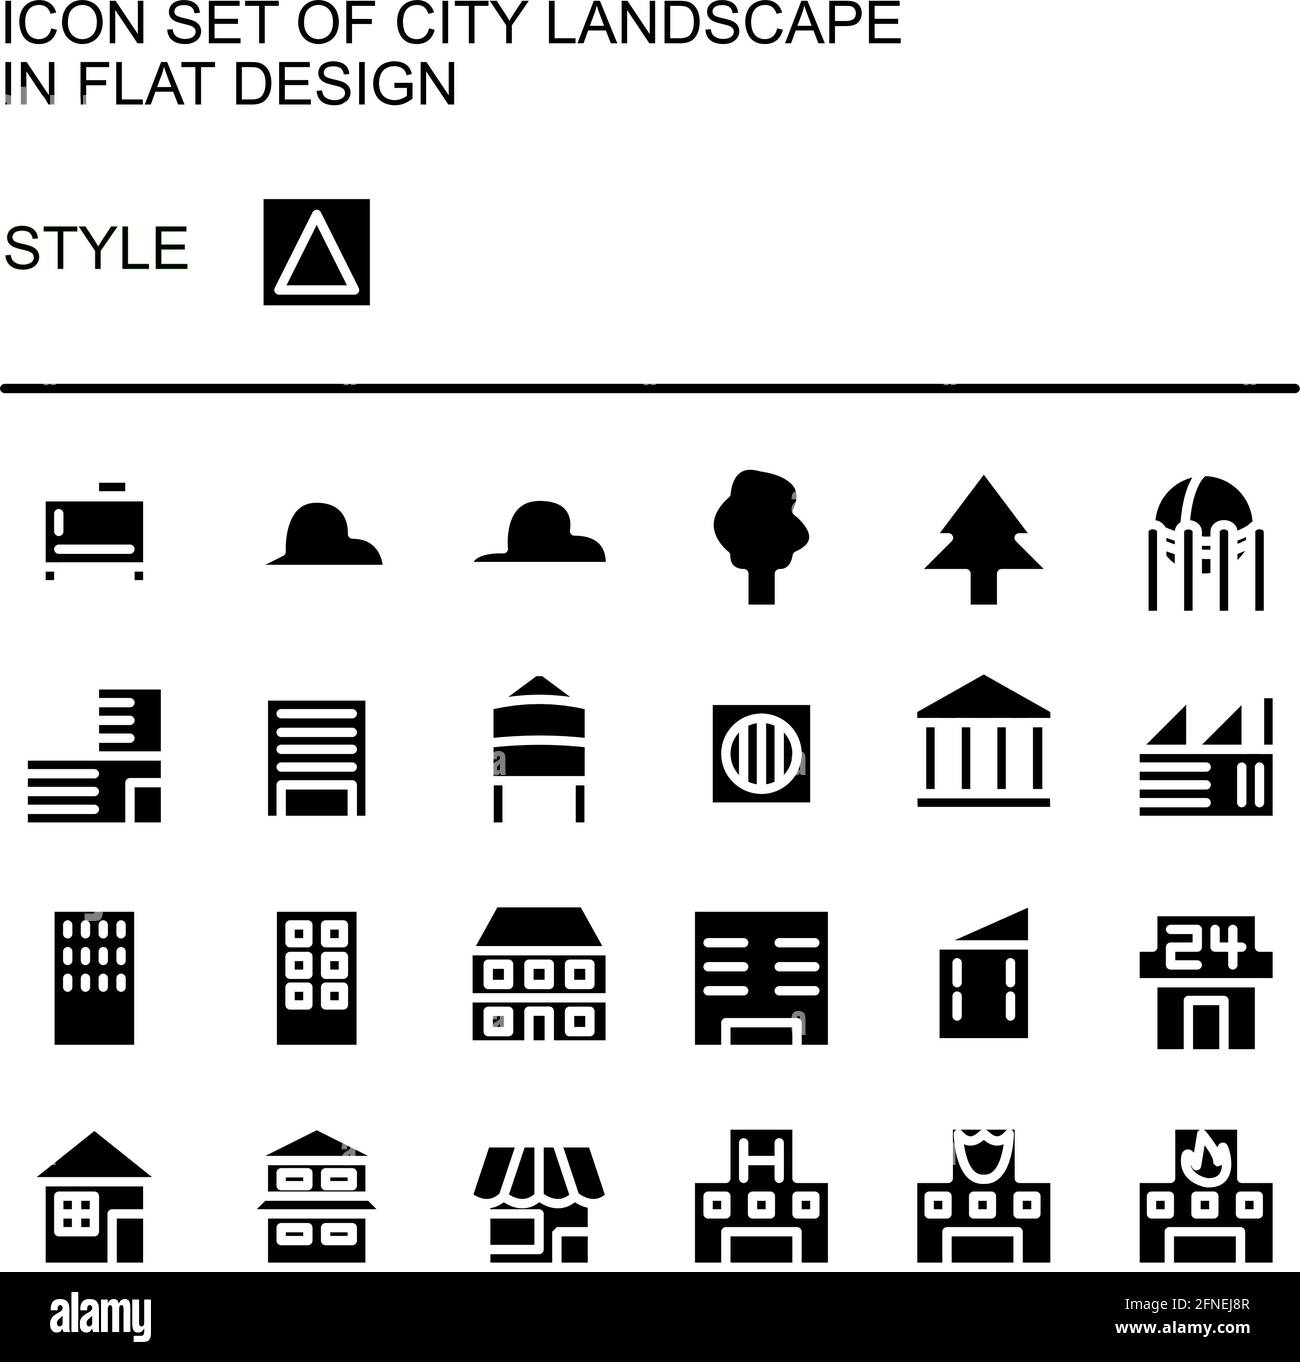 Icône de paysage urbain au design plat avec lignes blanches, remplissage noir. Illustration de Vecteur